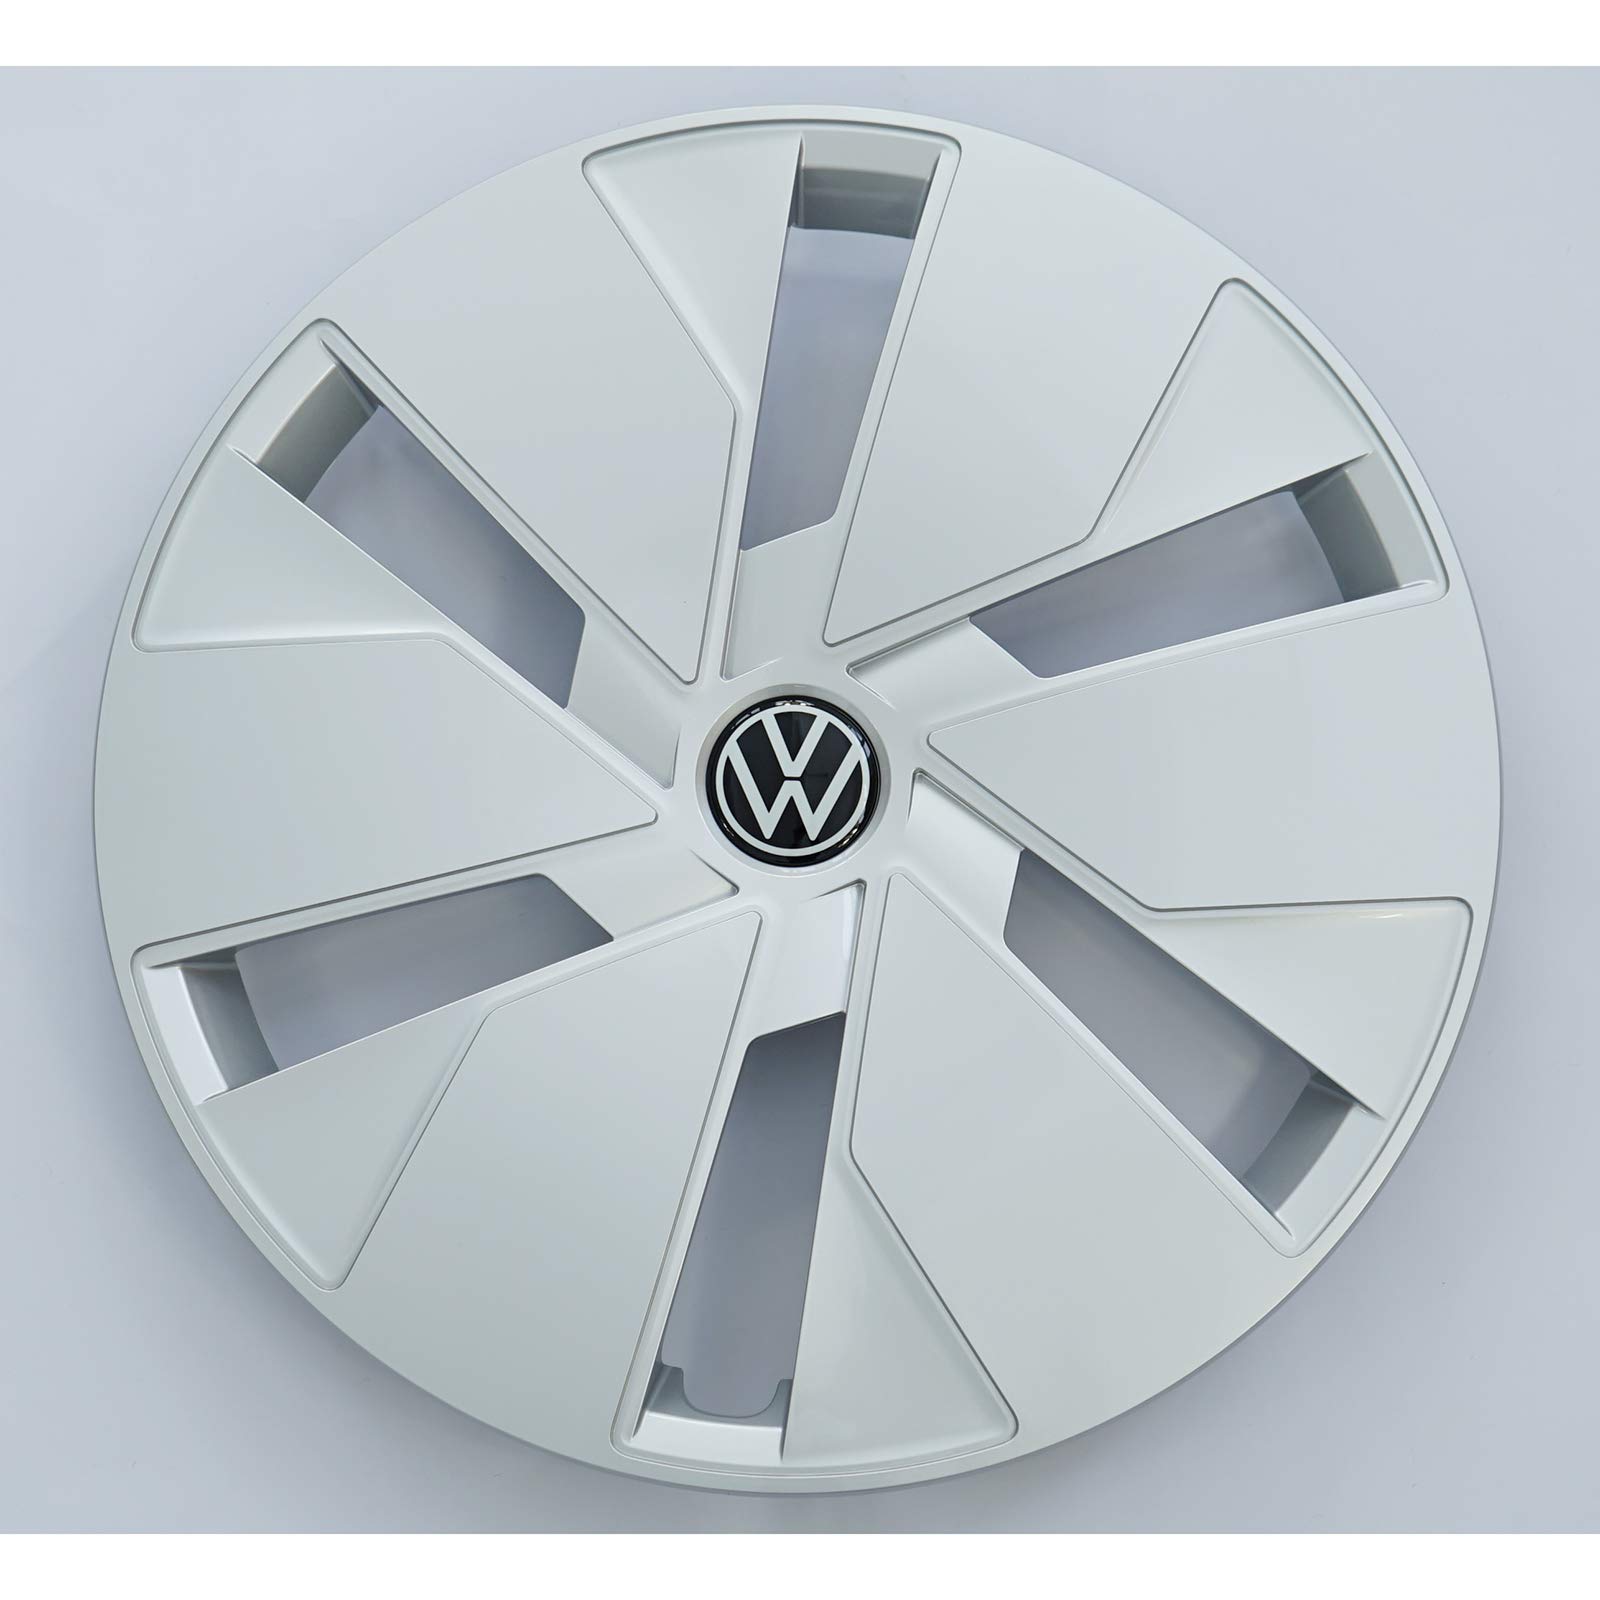 Volkswagen 5G0071456YTI 5G0071456 YTI Radkappen Radzierblenden für  Stahlfelgen - 4 Stück, Silber (Brillantsilber ), 16 Zoll